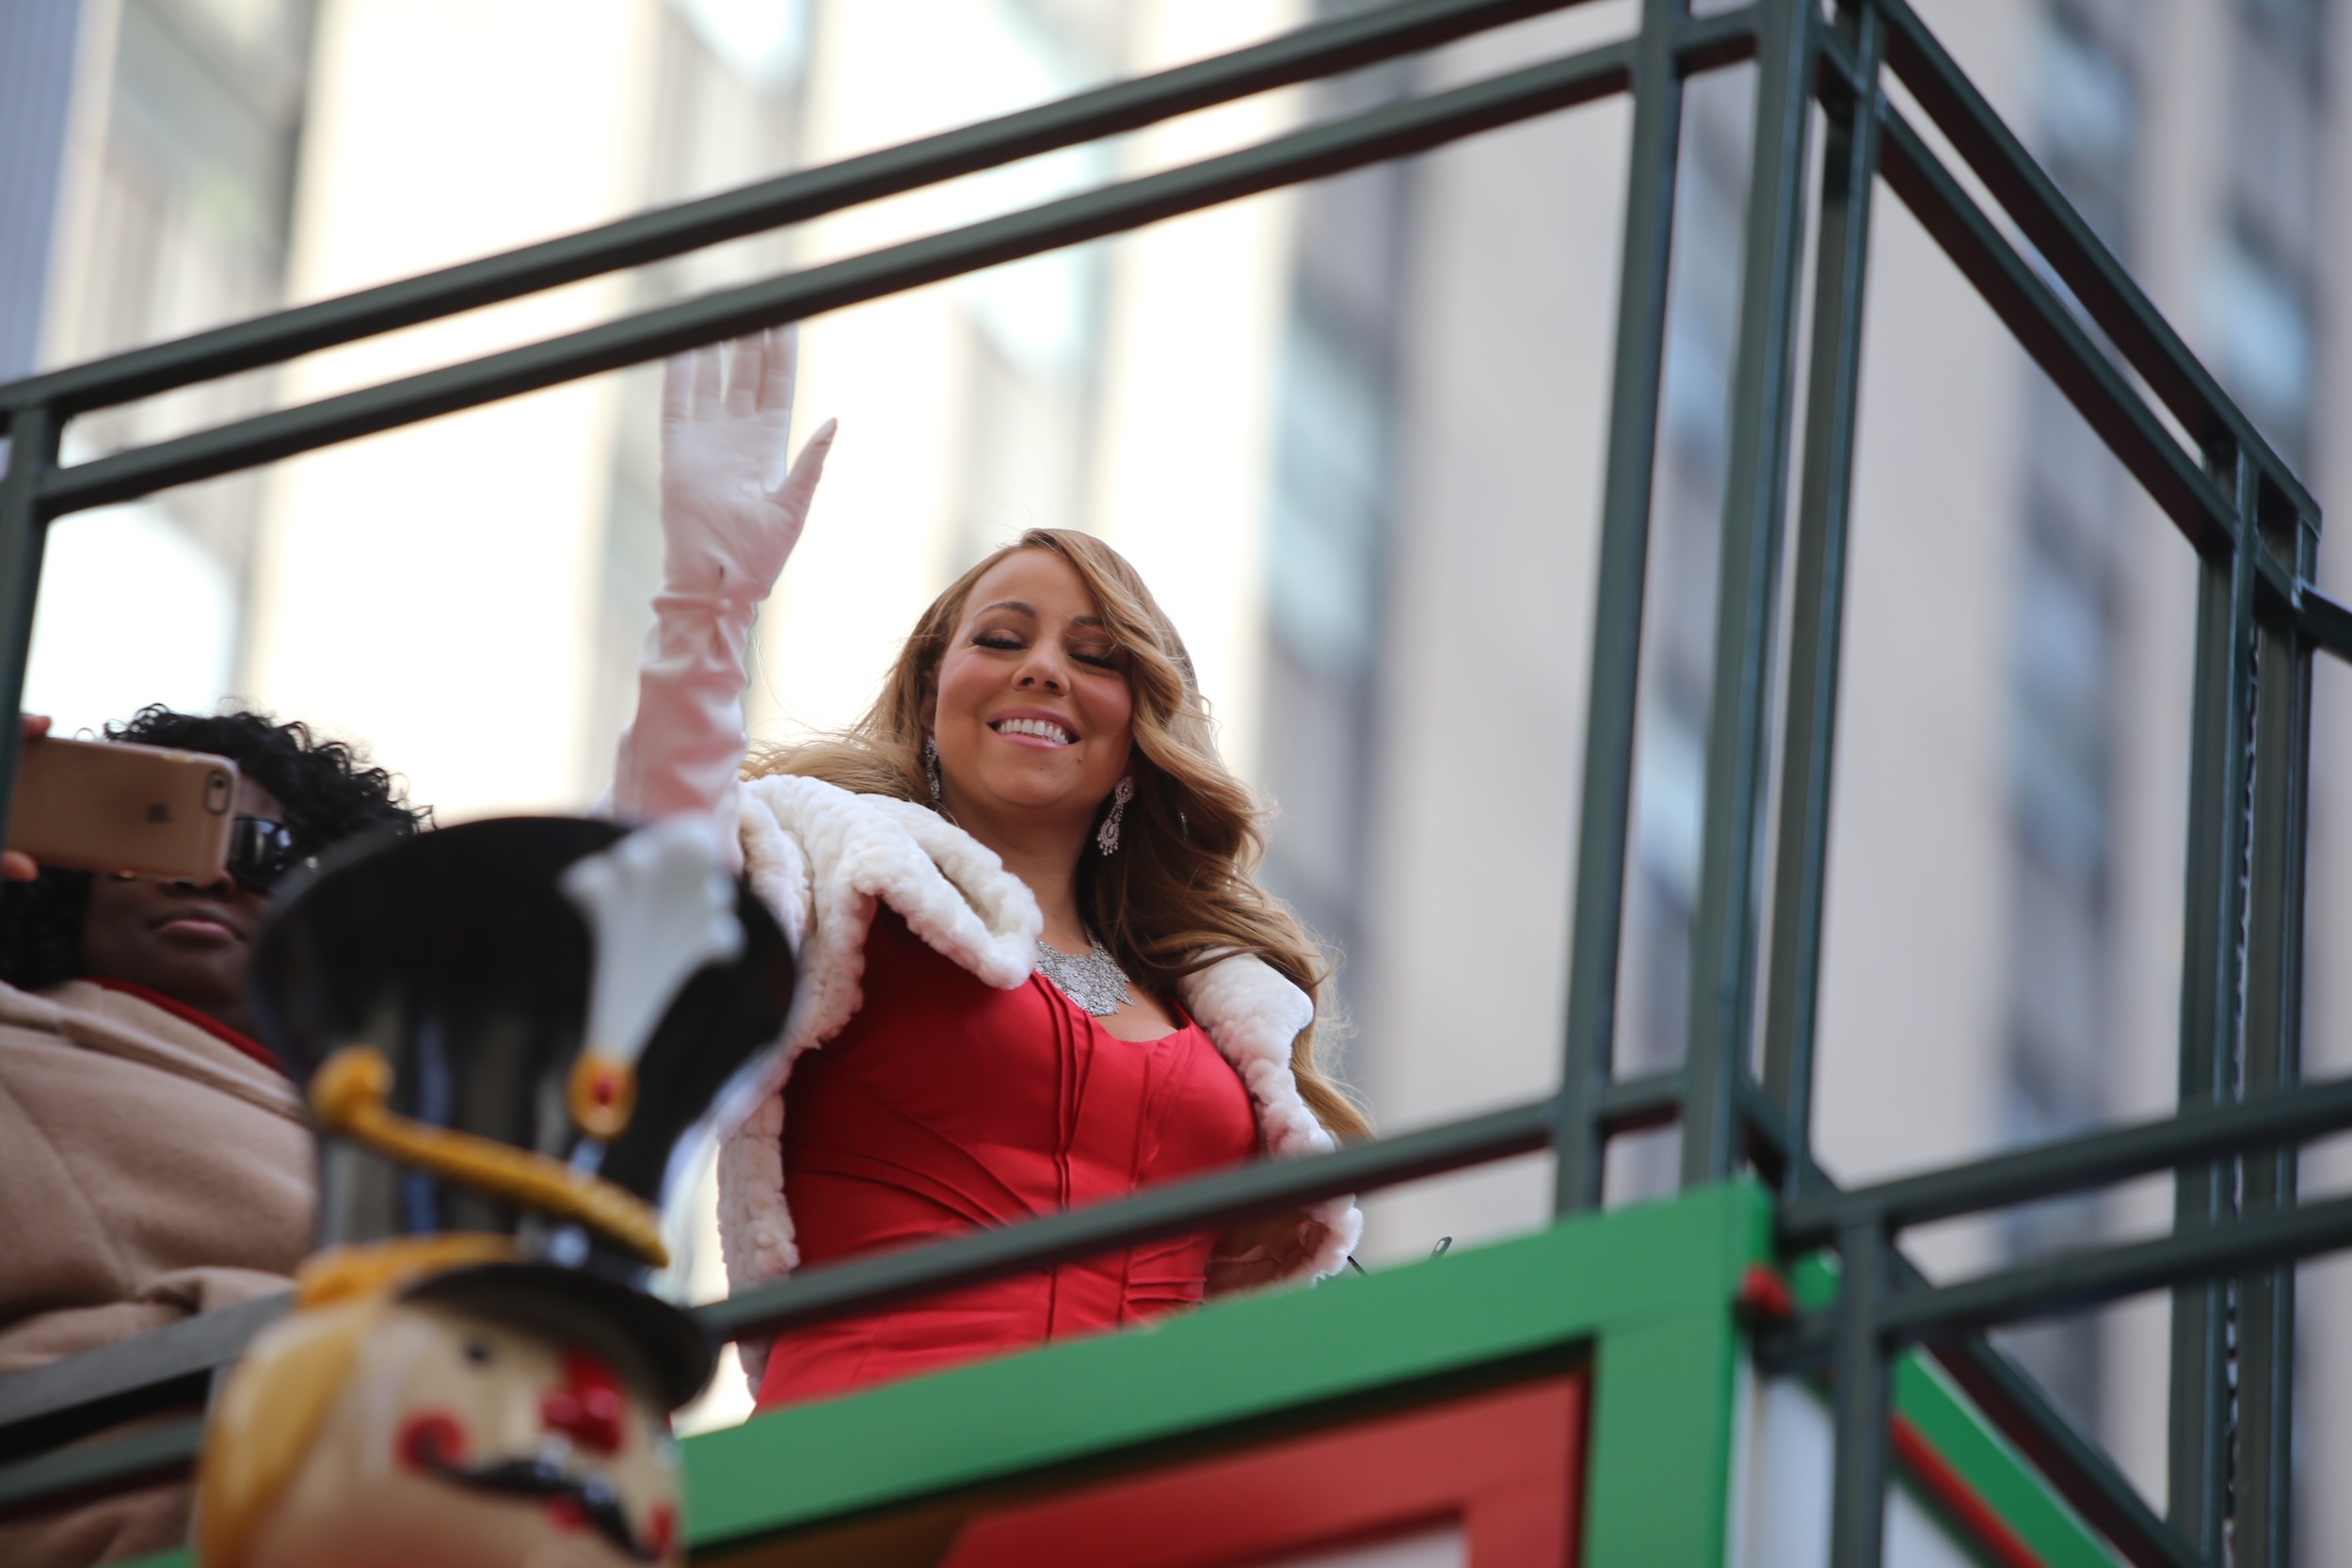 Toujours aussi populaire à Noël, la petite entreprise Mariah Carey ne connaît (vraiment) pas la crise